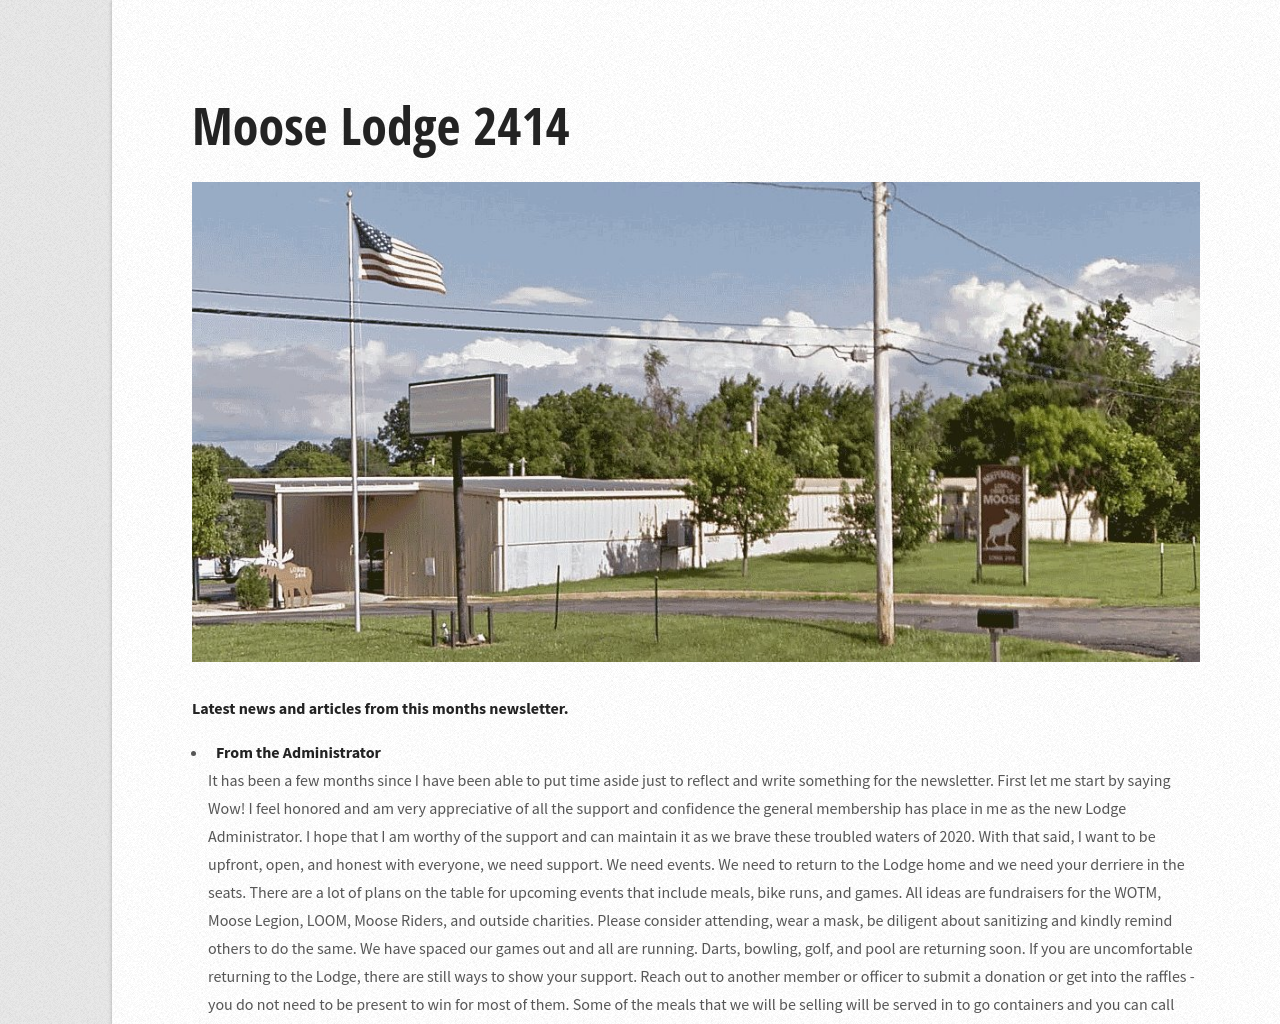 mooselodge2414.org